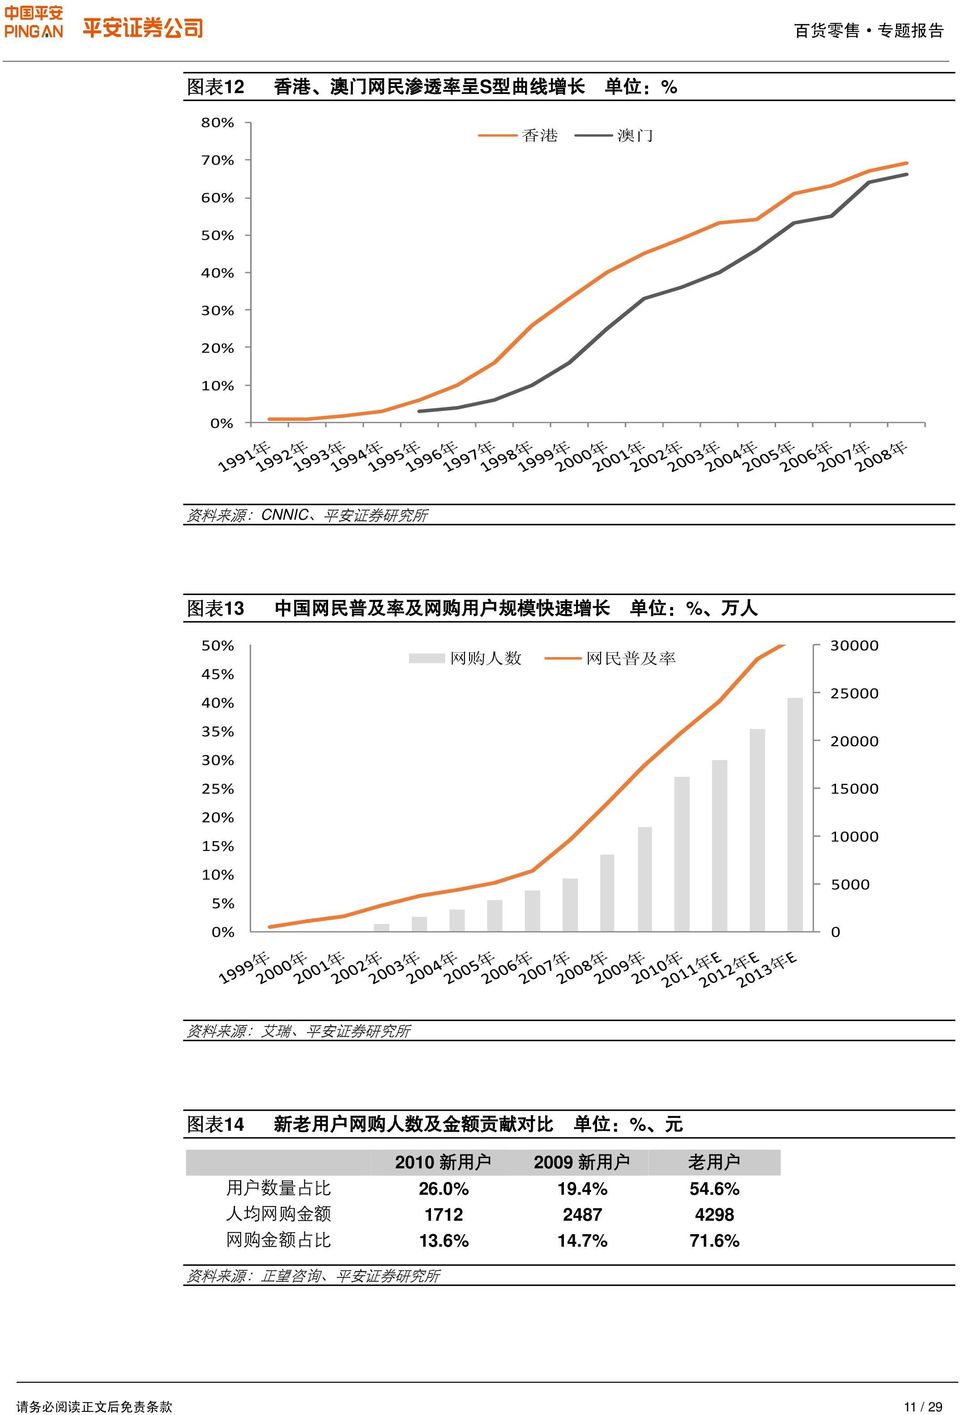 5000 0% 0 资 料 来 源 : 艾 瑞 平 安 证 券 研 究 所 图 表 14 新 老 用 户 网 购 人 数 及 金 额 贡 献 对 比 单 位 :% 元 2010 新 用 户 2009 新 用 户 老 用 户 用 户 数 量 占 比 26.